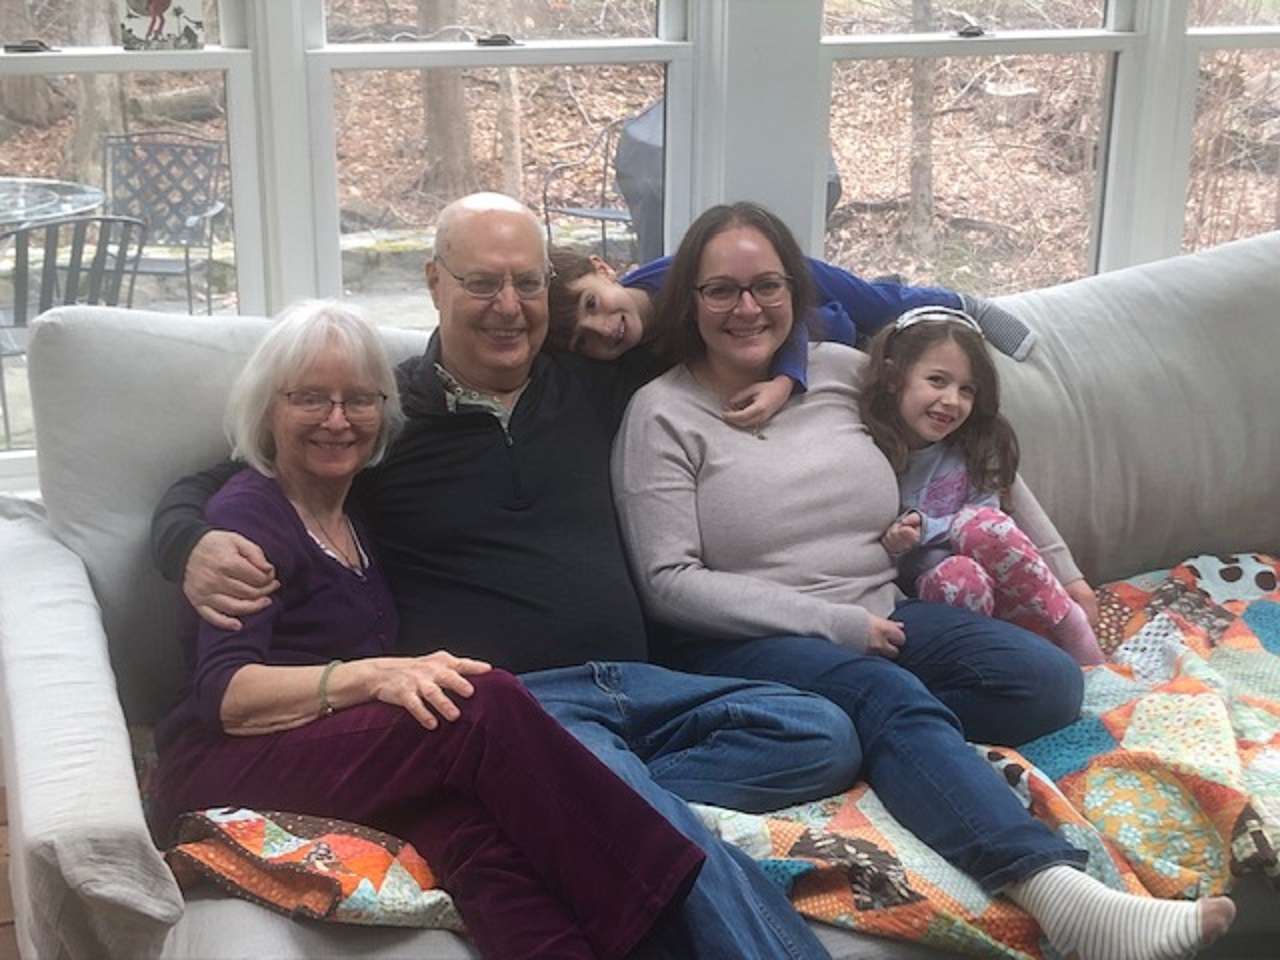 Sarah i rodzina i ja puzzle online ze zdjęcia